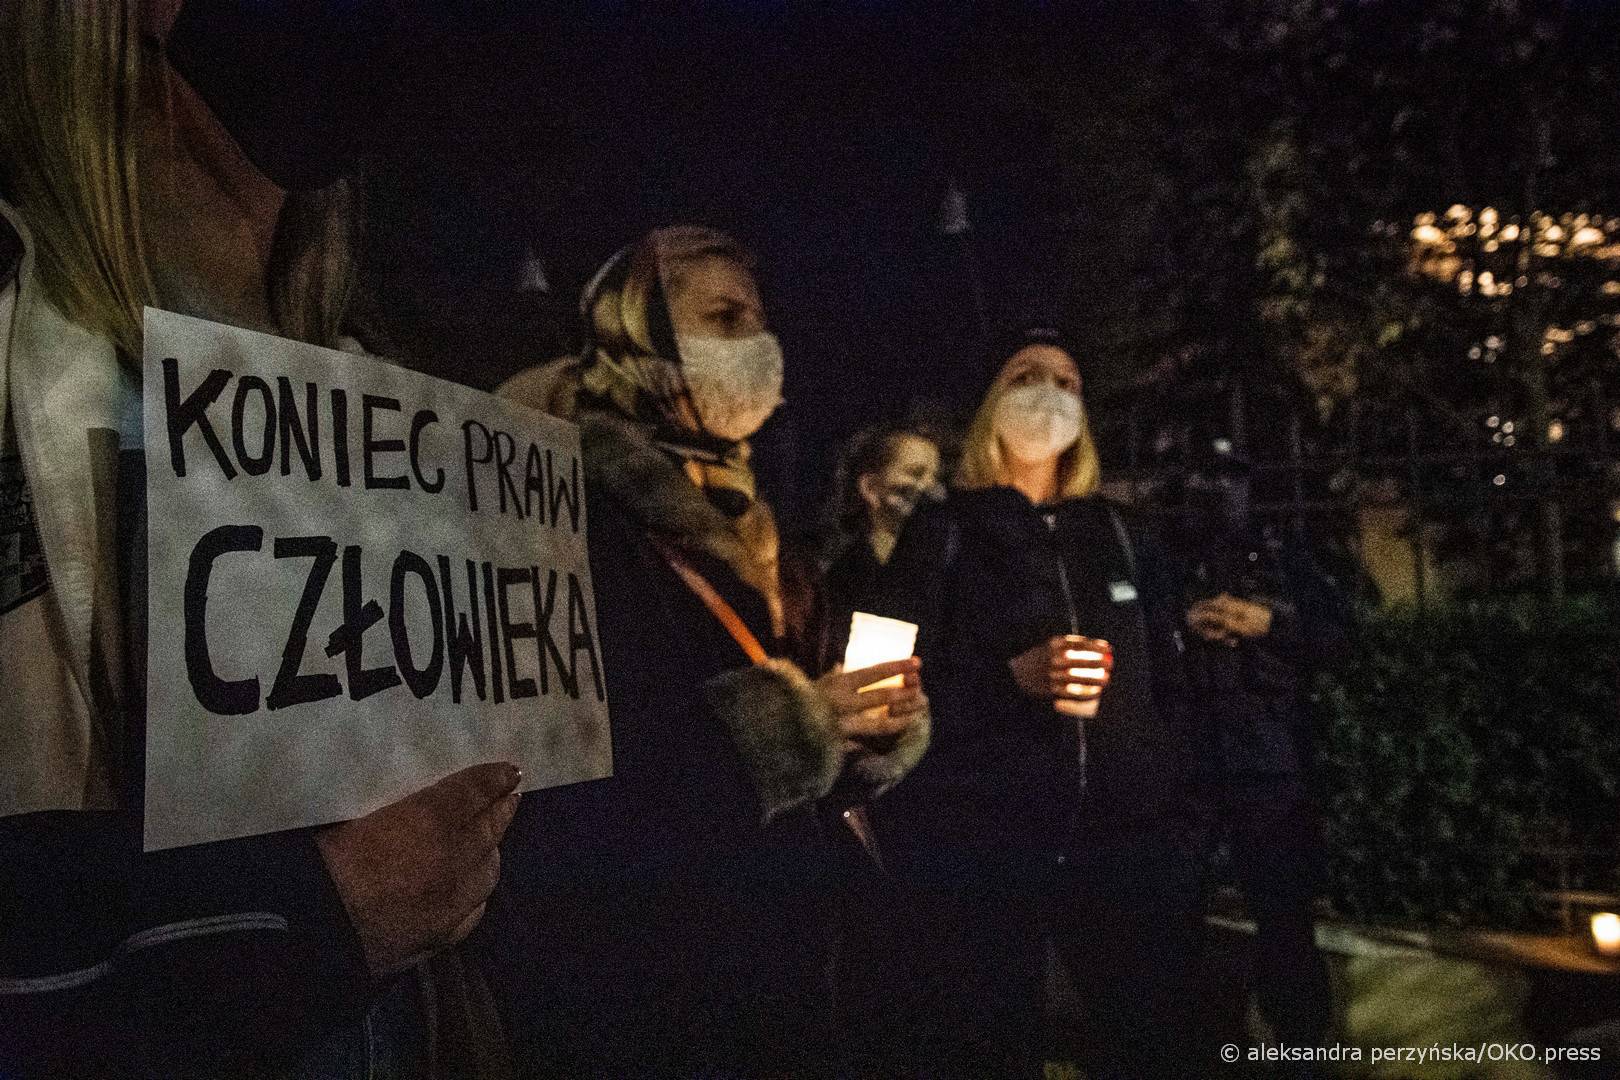 Warszawa, 22.10.2020. Protestujący wyrażali sprzeciw wobec barbarzyńskiego wyroku, który zakazuje aborcji w przypadku nieodwracalnego uszkodzenia lub ciężkiej choroby płodu